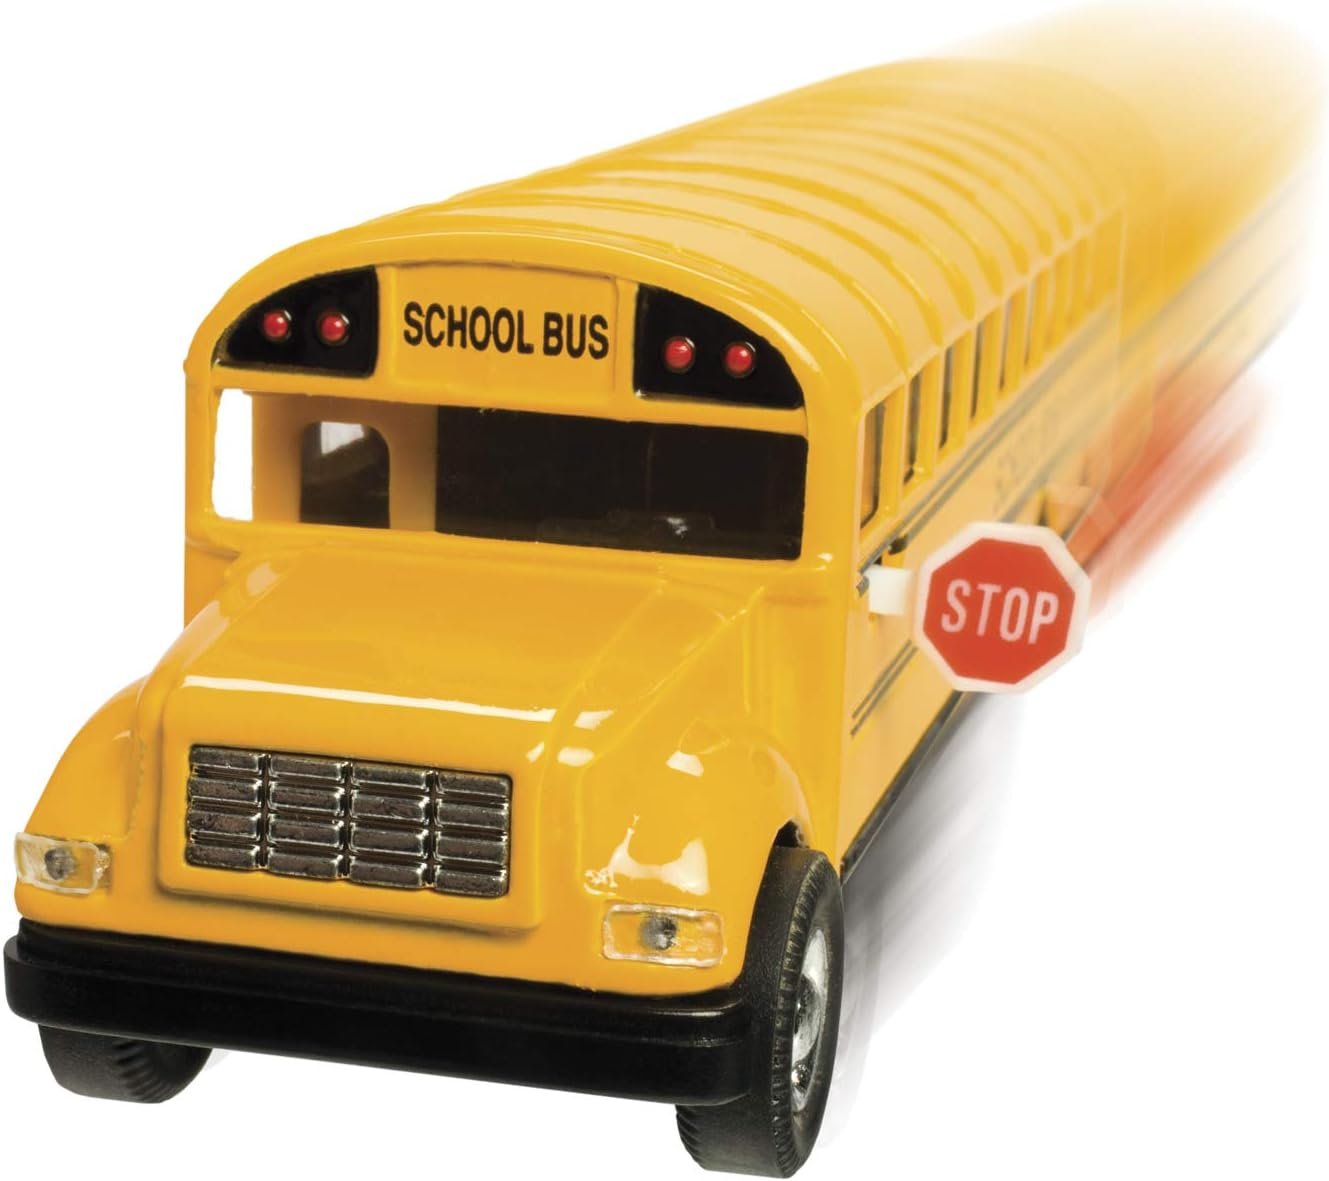 KinsFun Large School Bus, 6